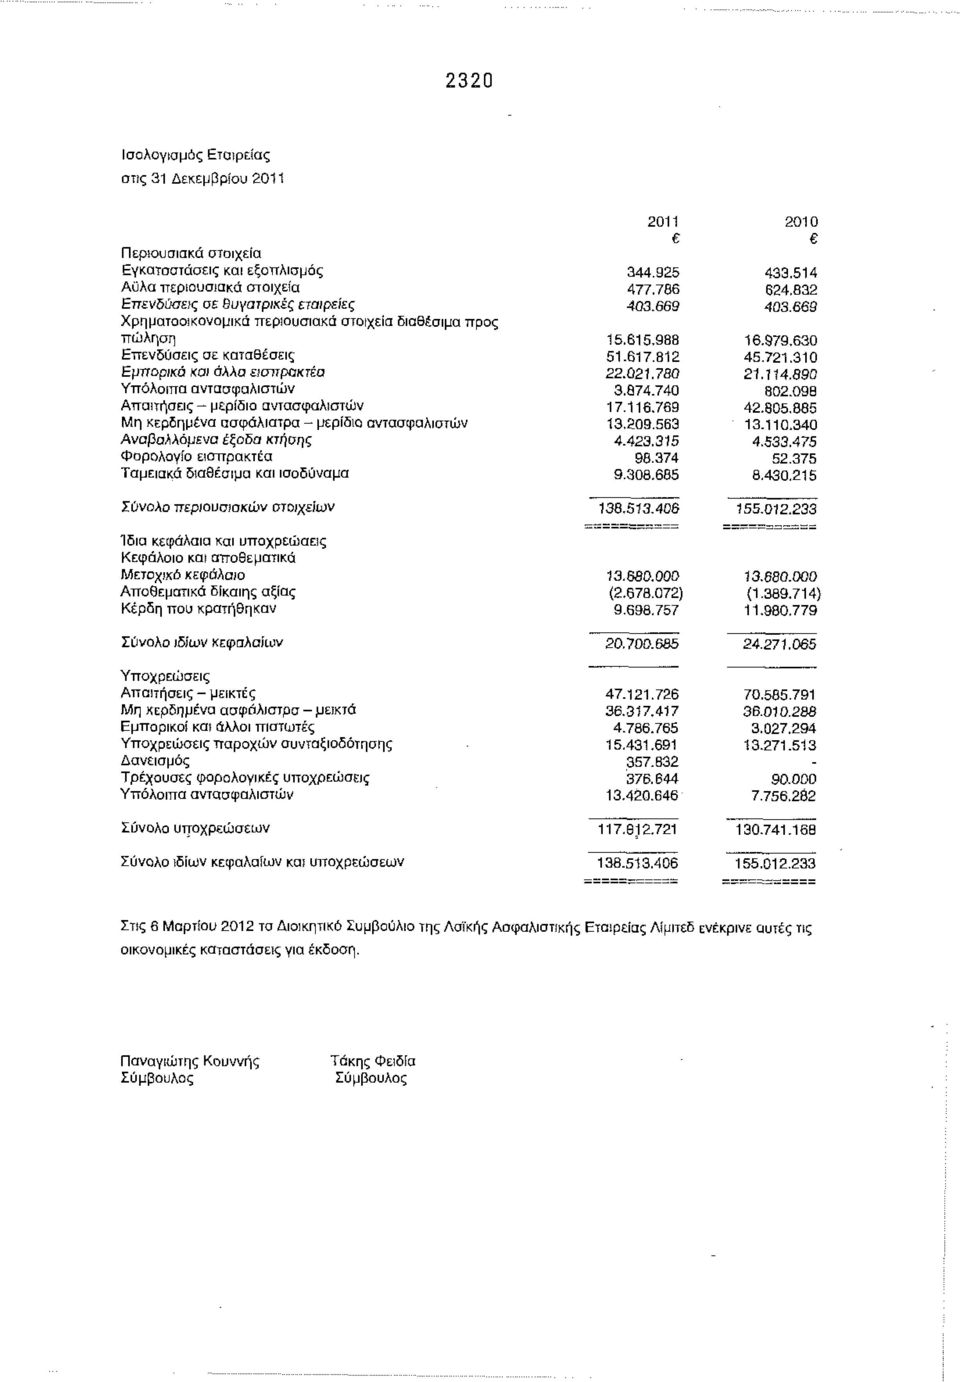 Αναβαλλόμενα έξοδα κτήσης Φορολογία εισπρακτέα Ταμειακά διαθέσιμα και ισοδύναμα Σύνολο περιουσιακών στοιχείων Ίδια κεφάλαια και υποχρεώσεις Κεφάλαιο και αποθεματικά Μετοχικό κεφάλαιο Αποθεματικά